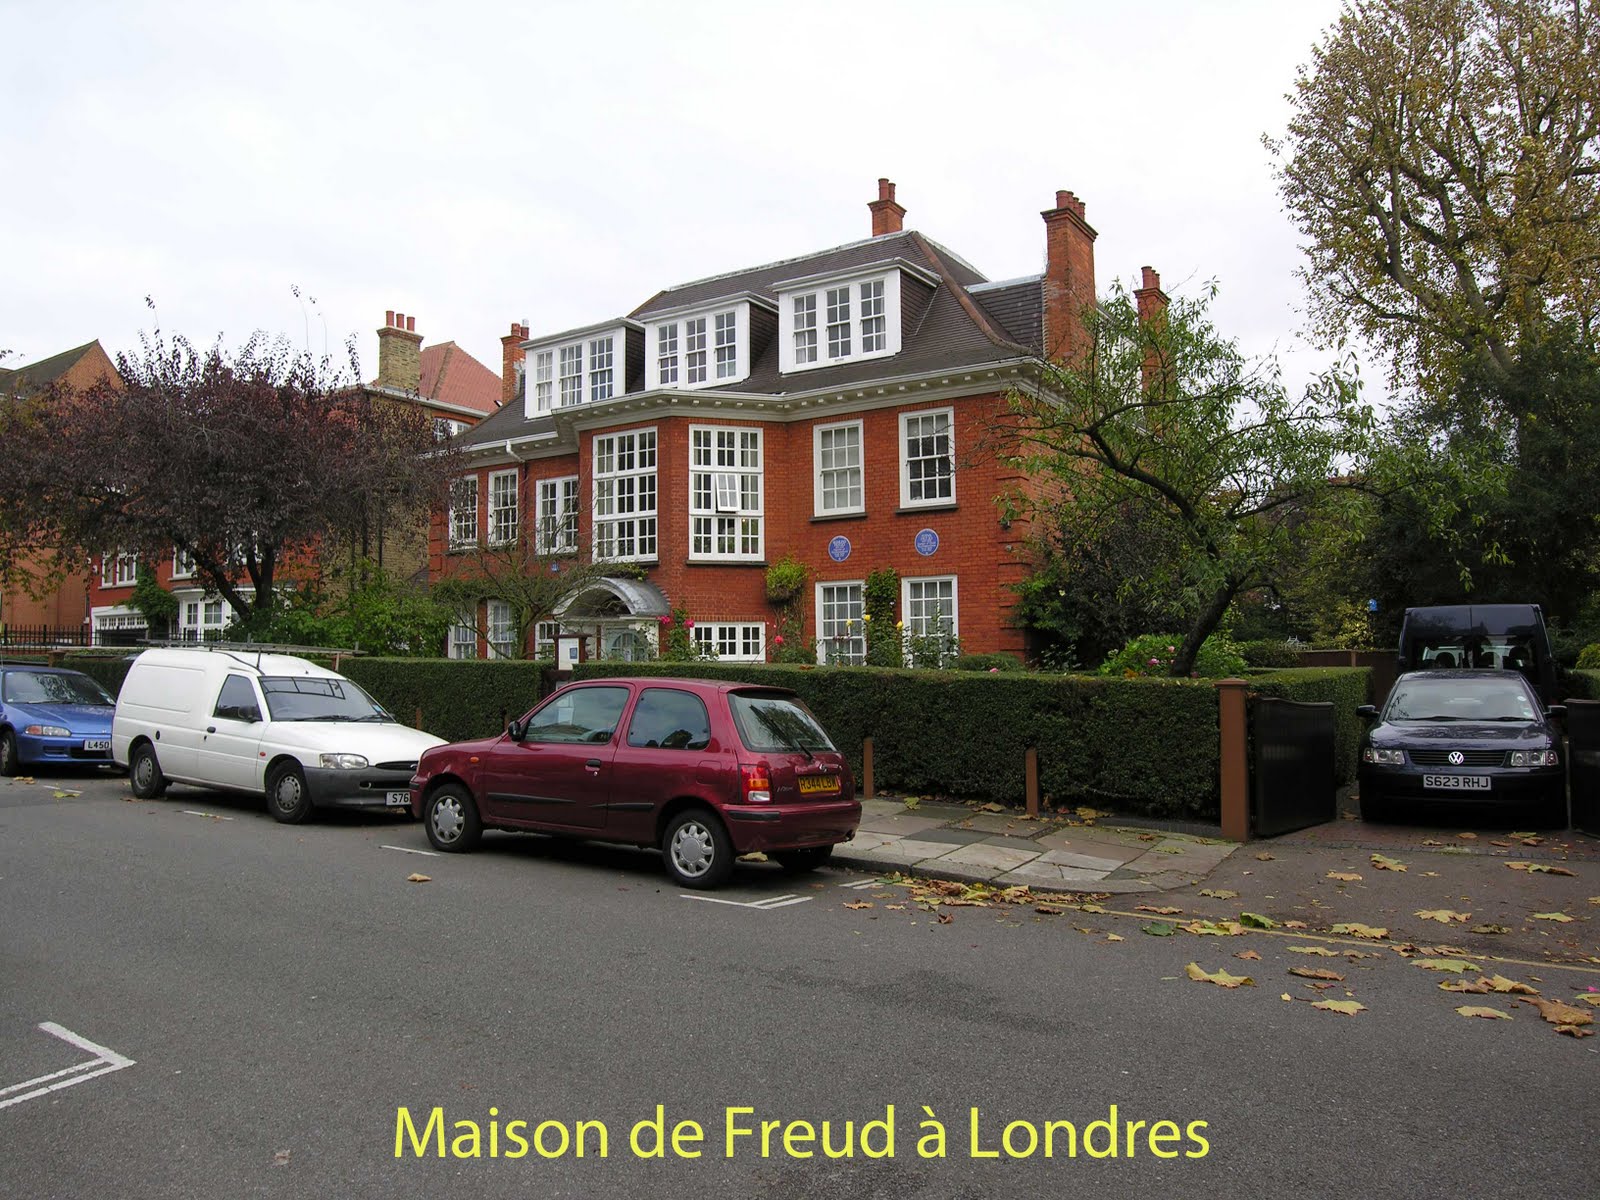 Le week-end des 25 et 26 février 2012 : visite de la troisième demeure de Freud à Londres avec Jane Mac Adam Freud